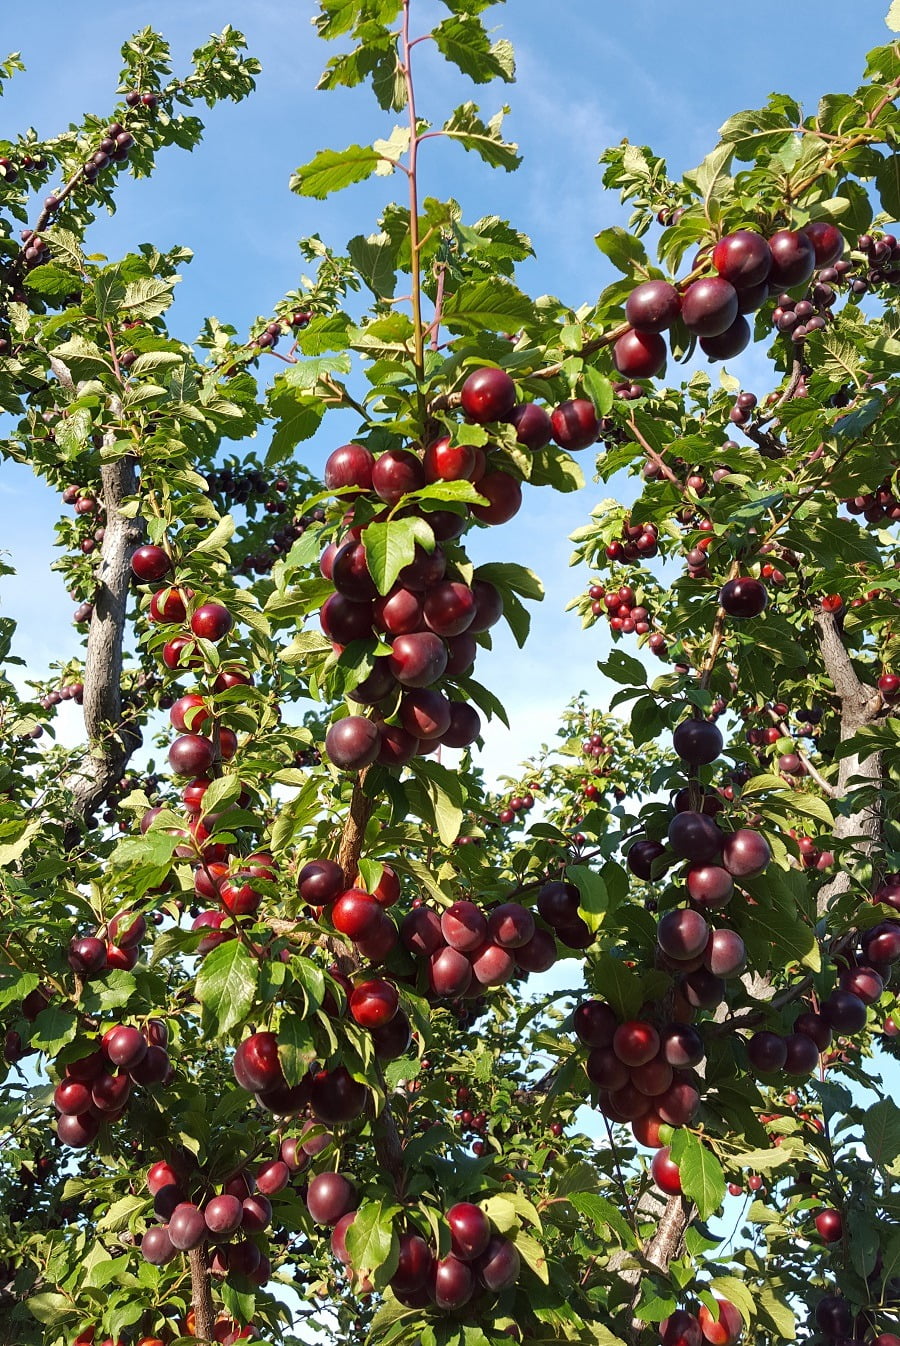 Blush Lane Orchard